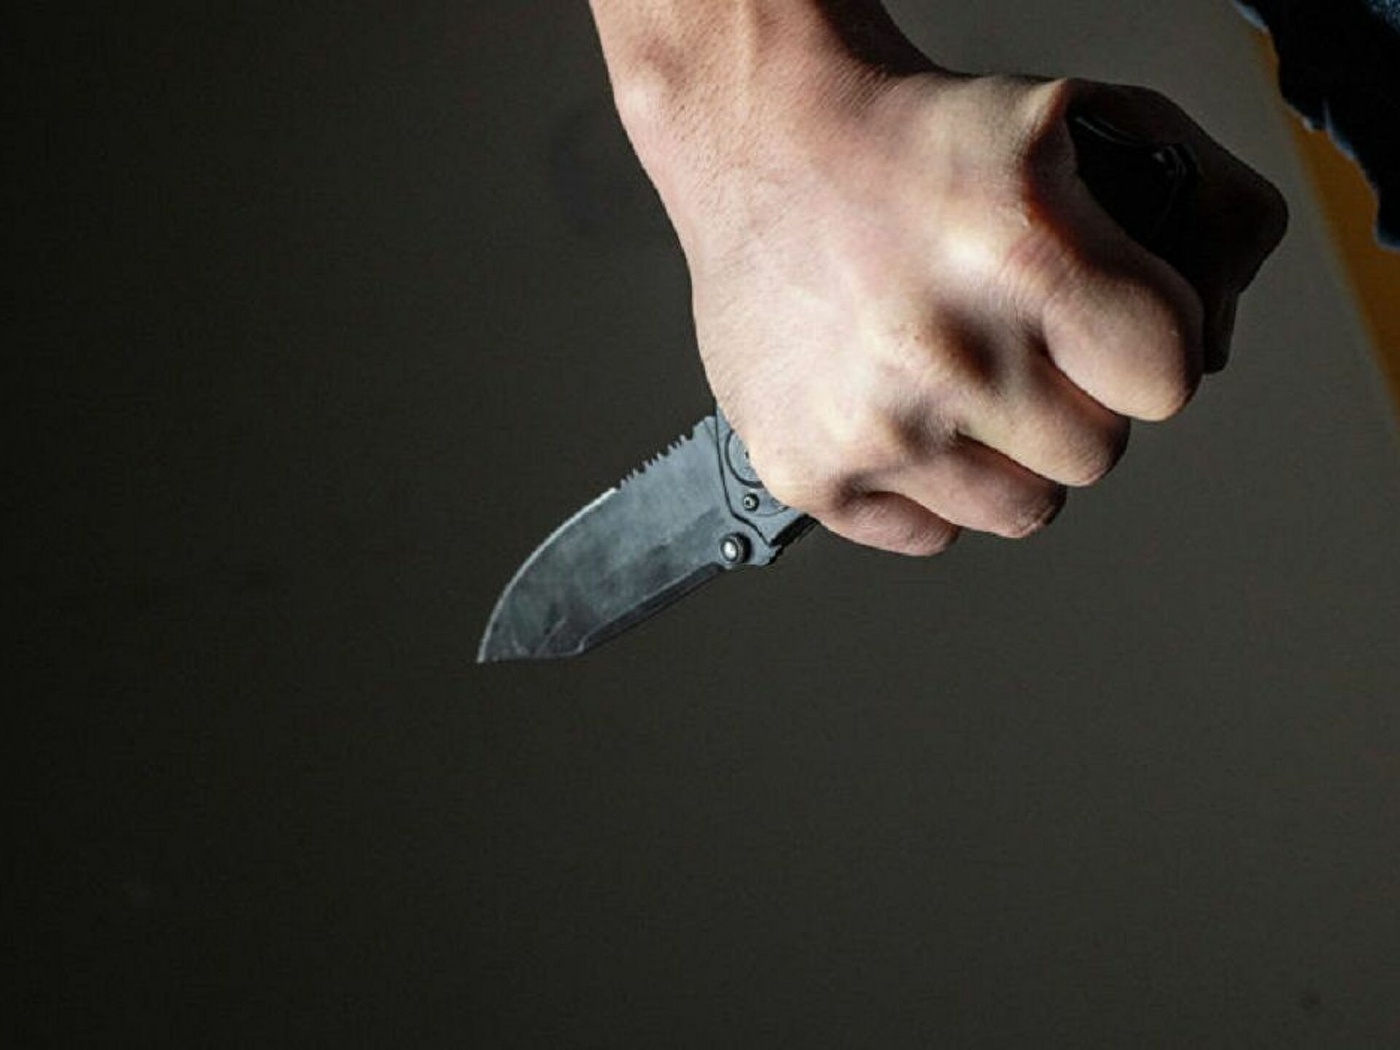 Мужчина серьезно покалечил ножом двоих детей бывшей сожительницы: детали ЧП под Кривым Рогом